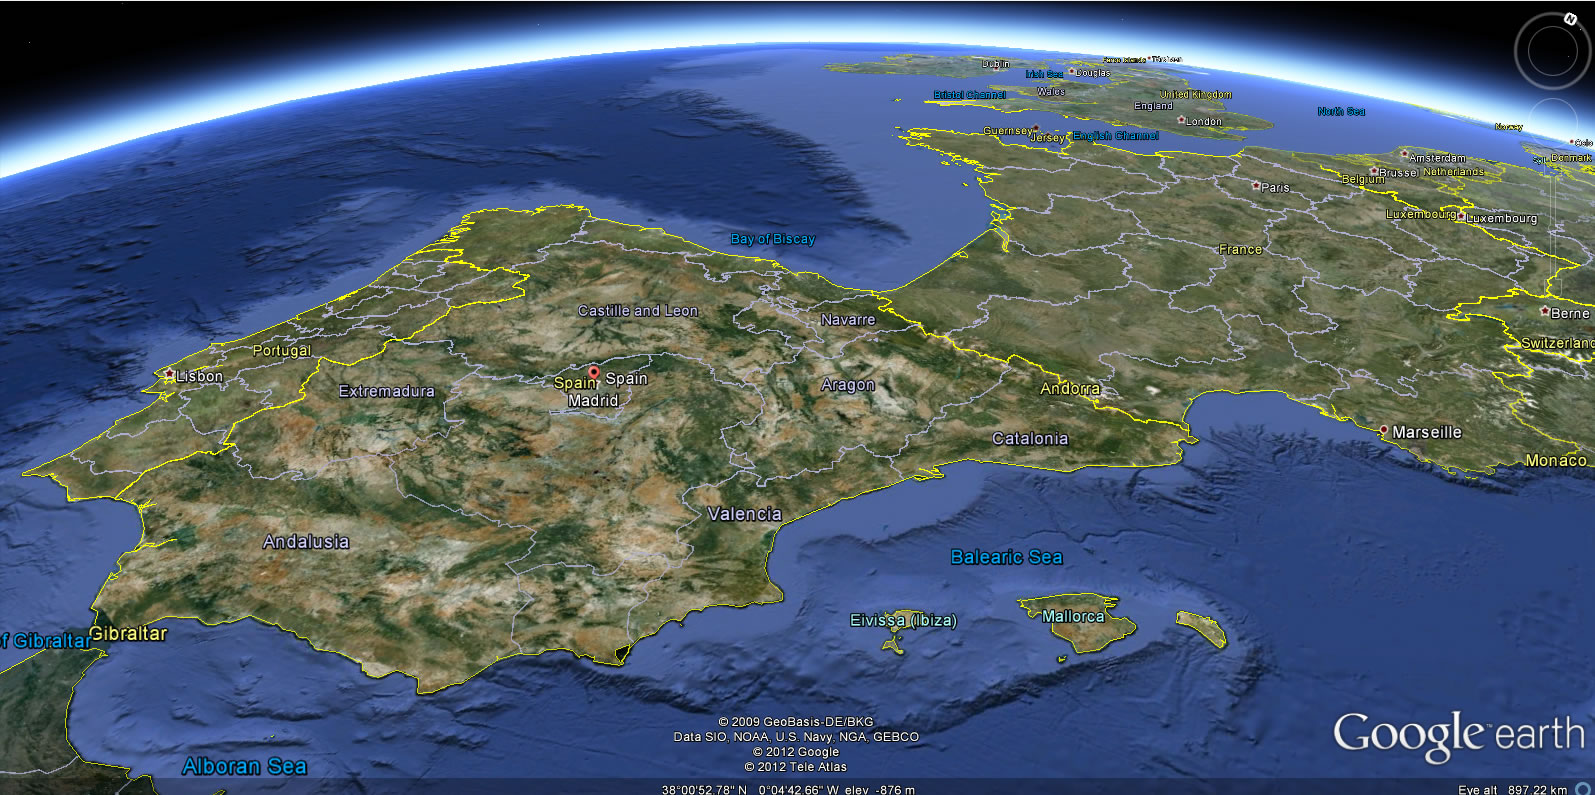 ispanya yeryuzu haritasi